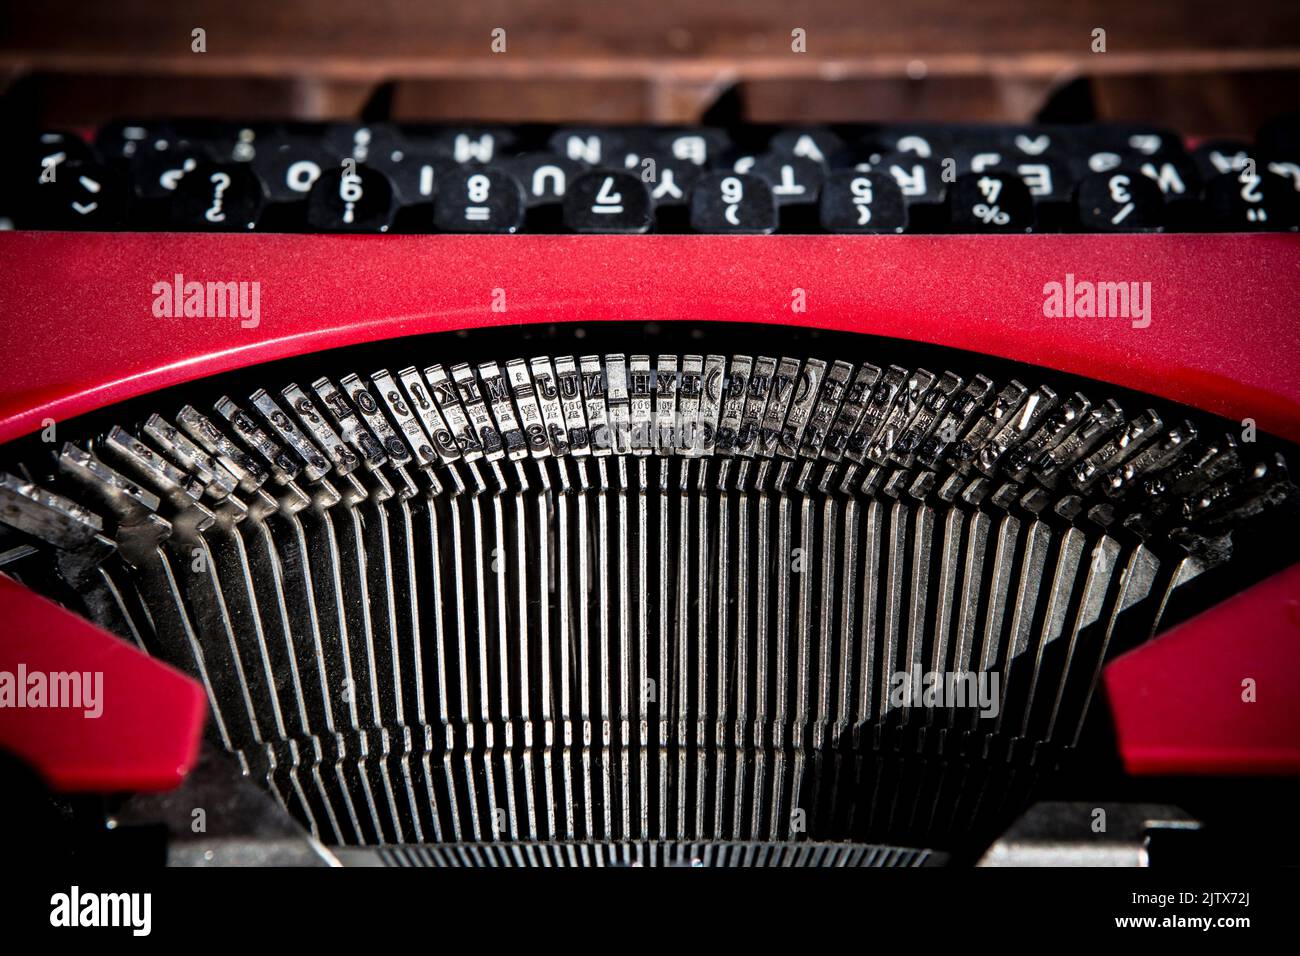 Red vintage typewriter. Typebars closeup. Stock Photo